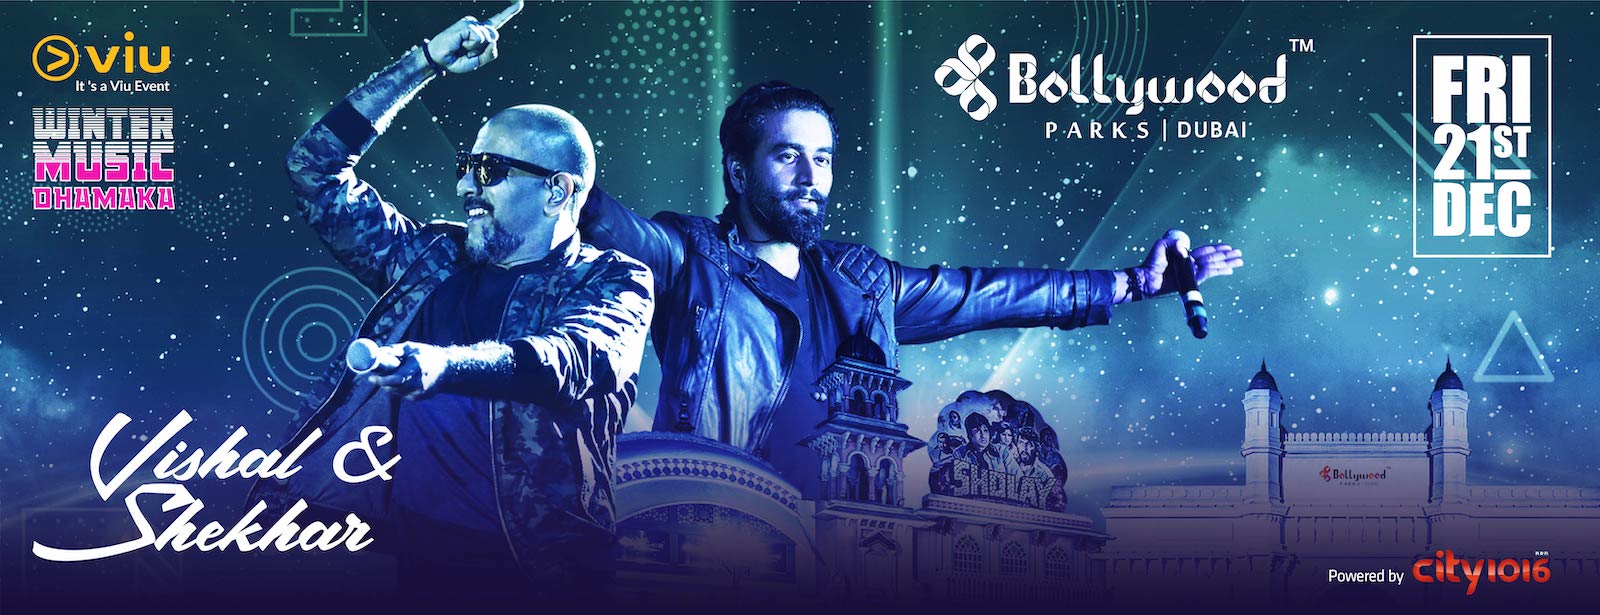 Vishal & Shekhar Live at Bollywood Parks Dubai - Coming Soon in UAE